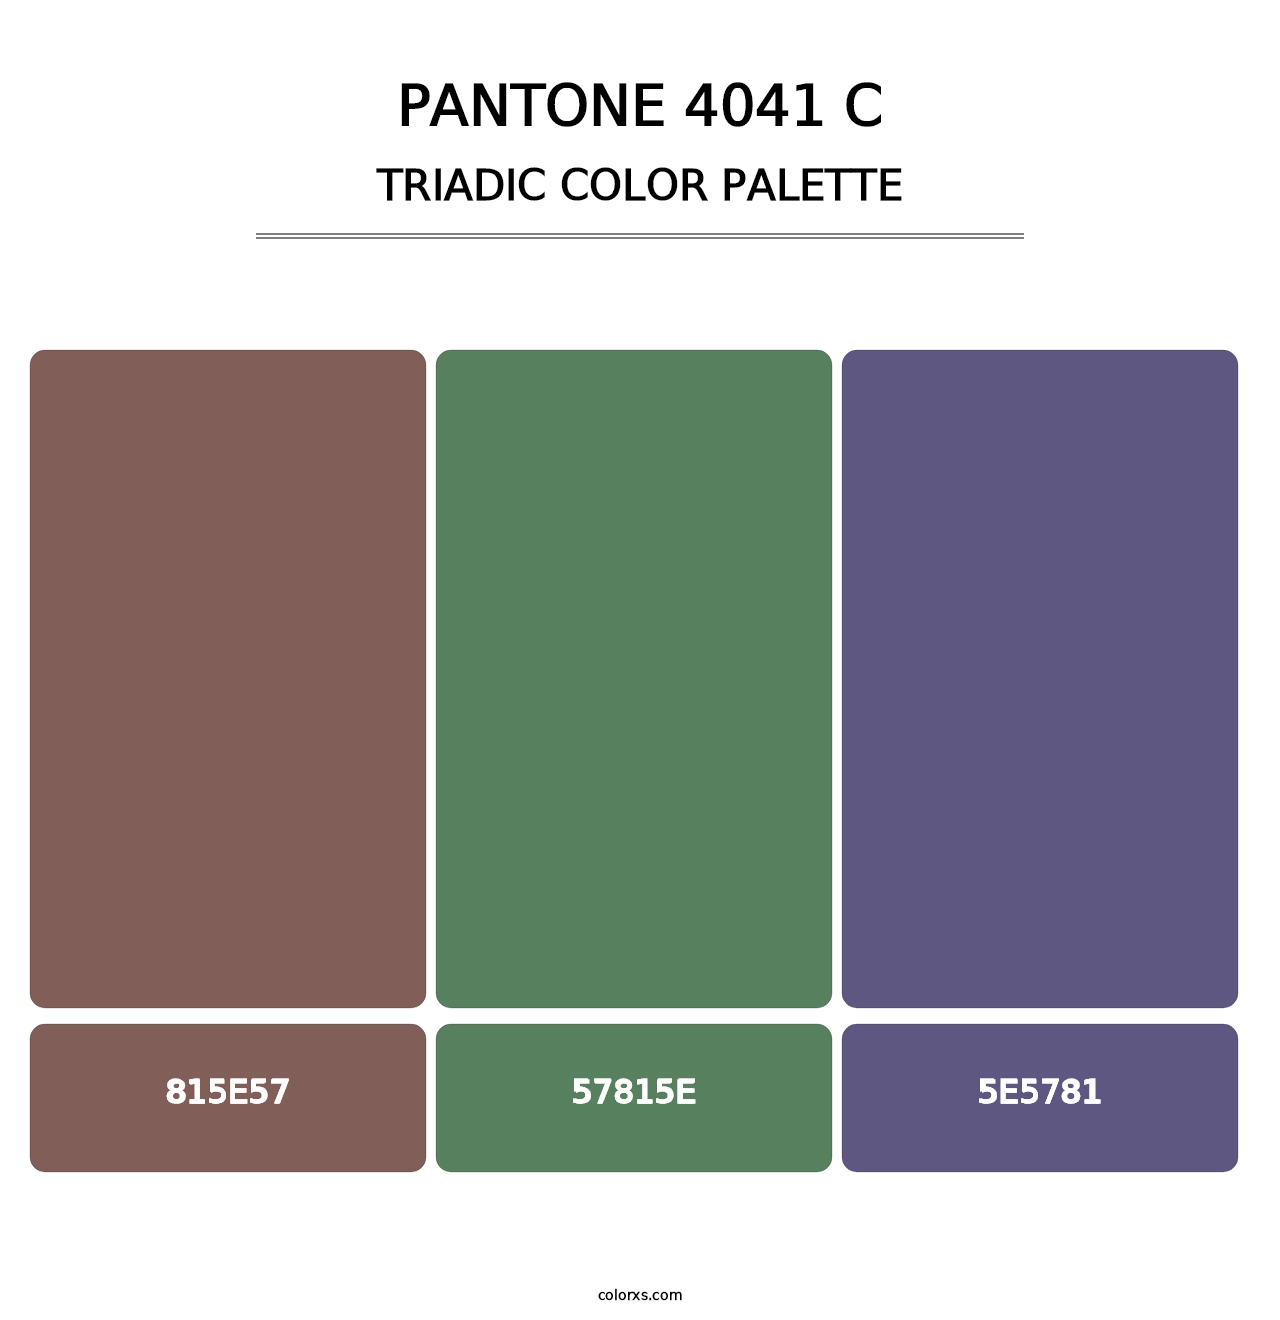 PANTONE 4041 C - Triadic Color Palette